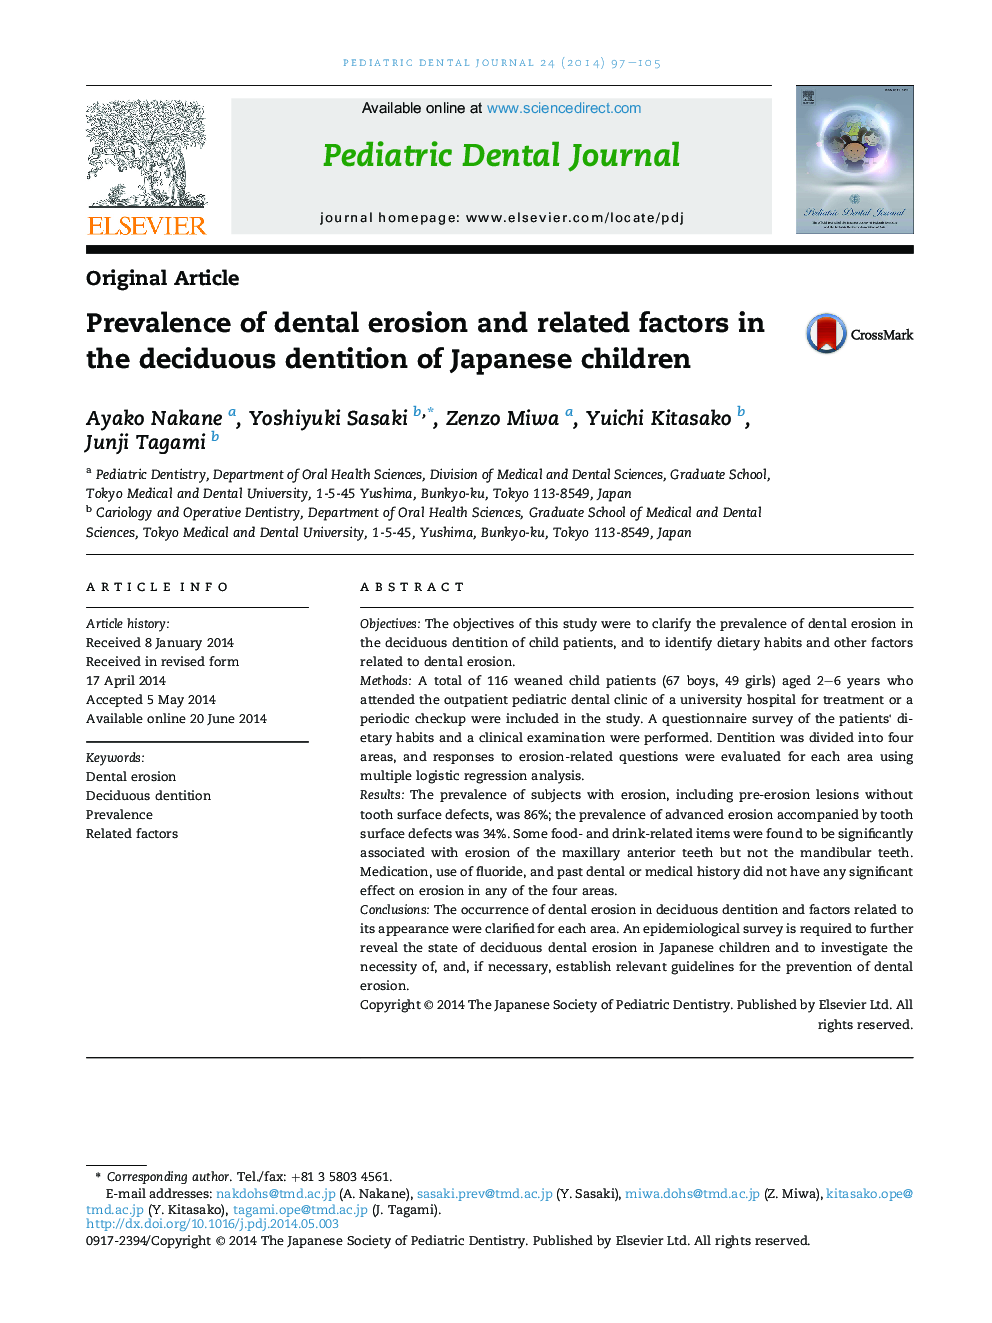 شیوع فرسایش دندانی و عوامل مرتبط با آن در دندانهای شیری کودکان ژاپنی 